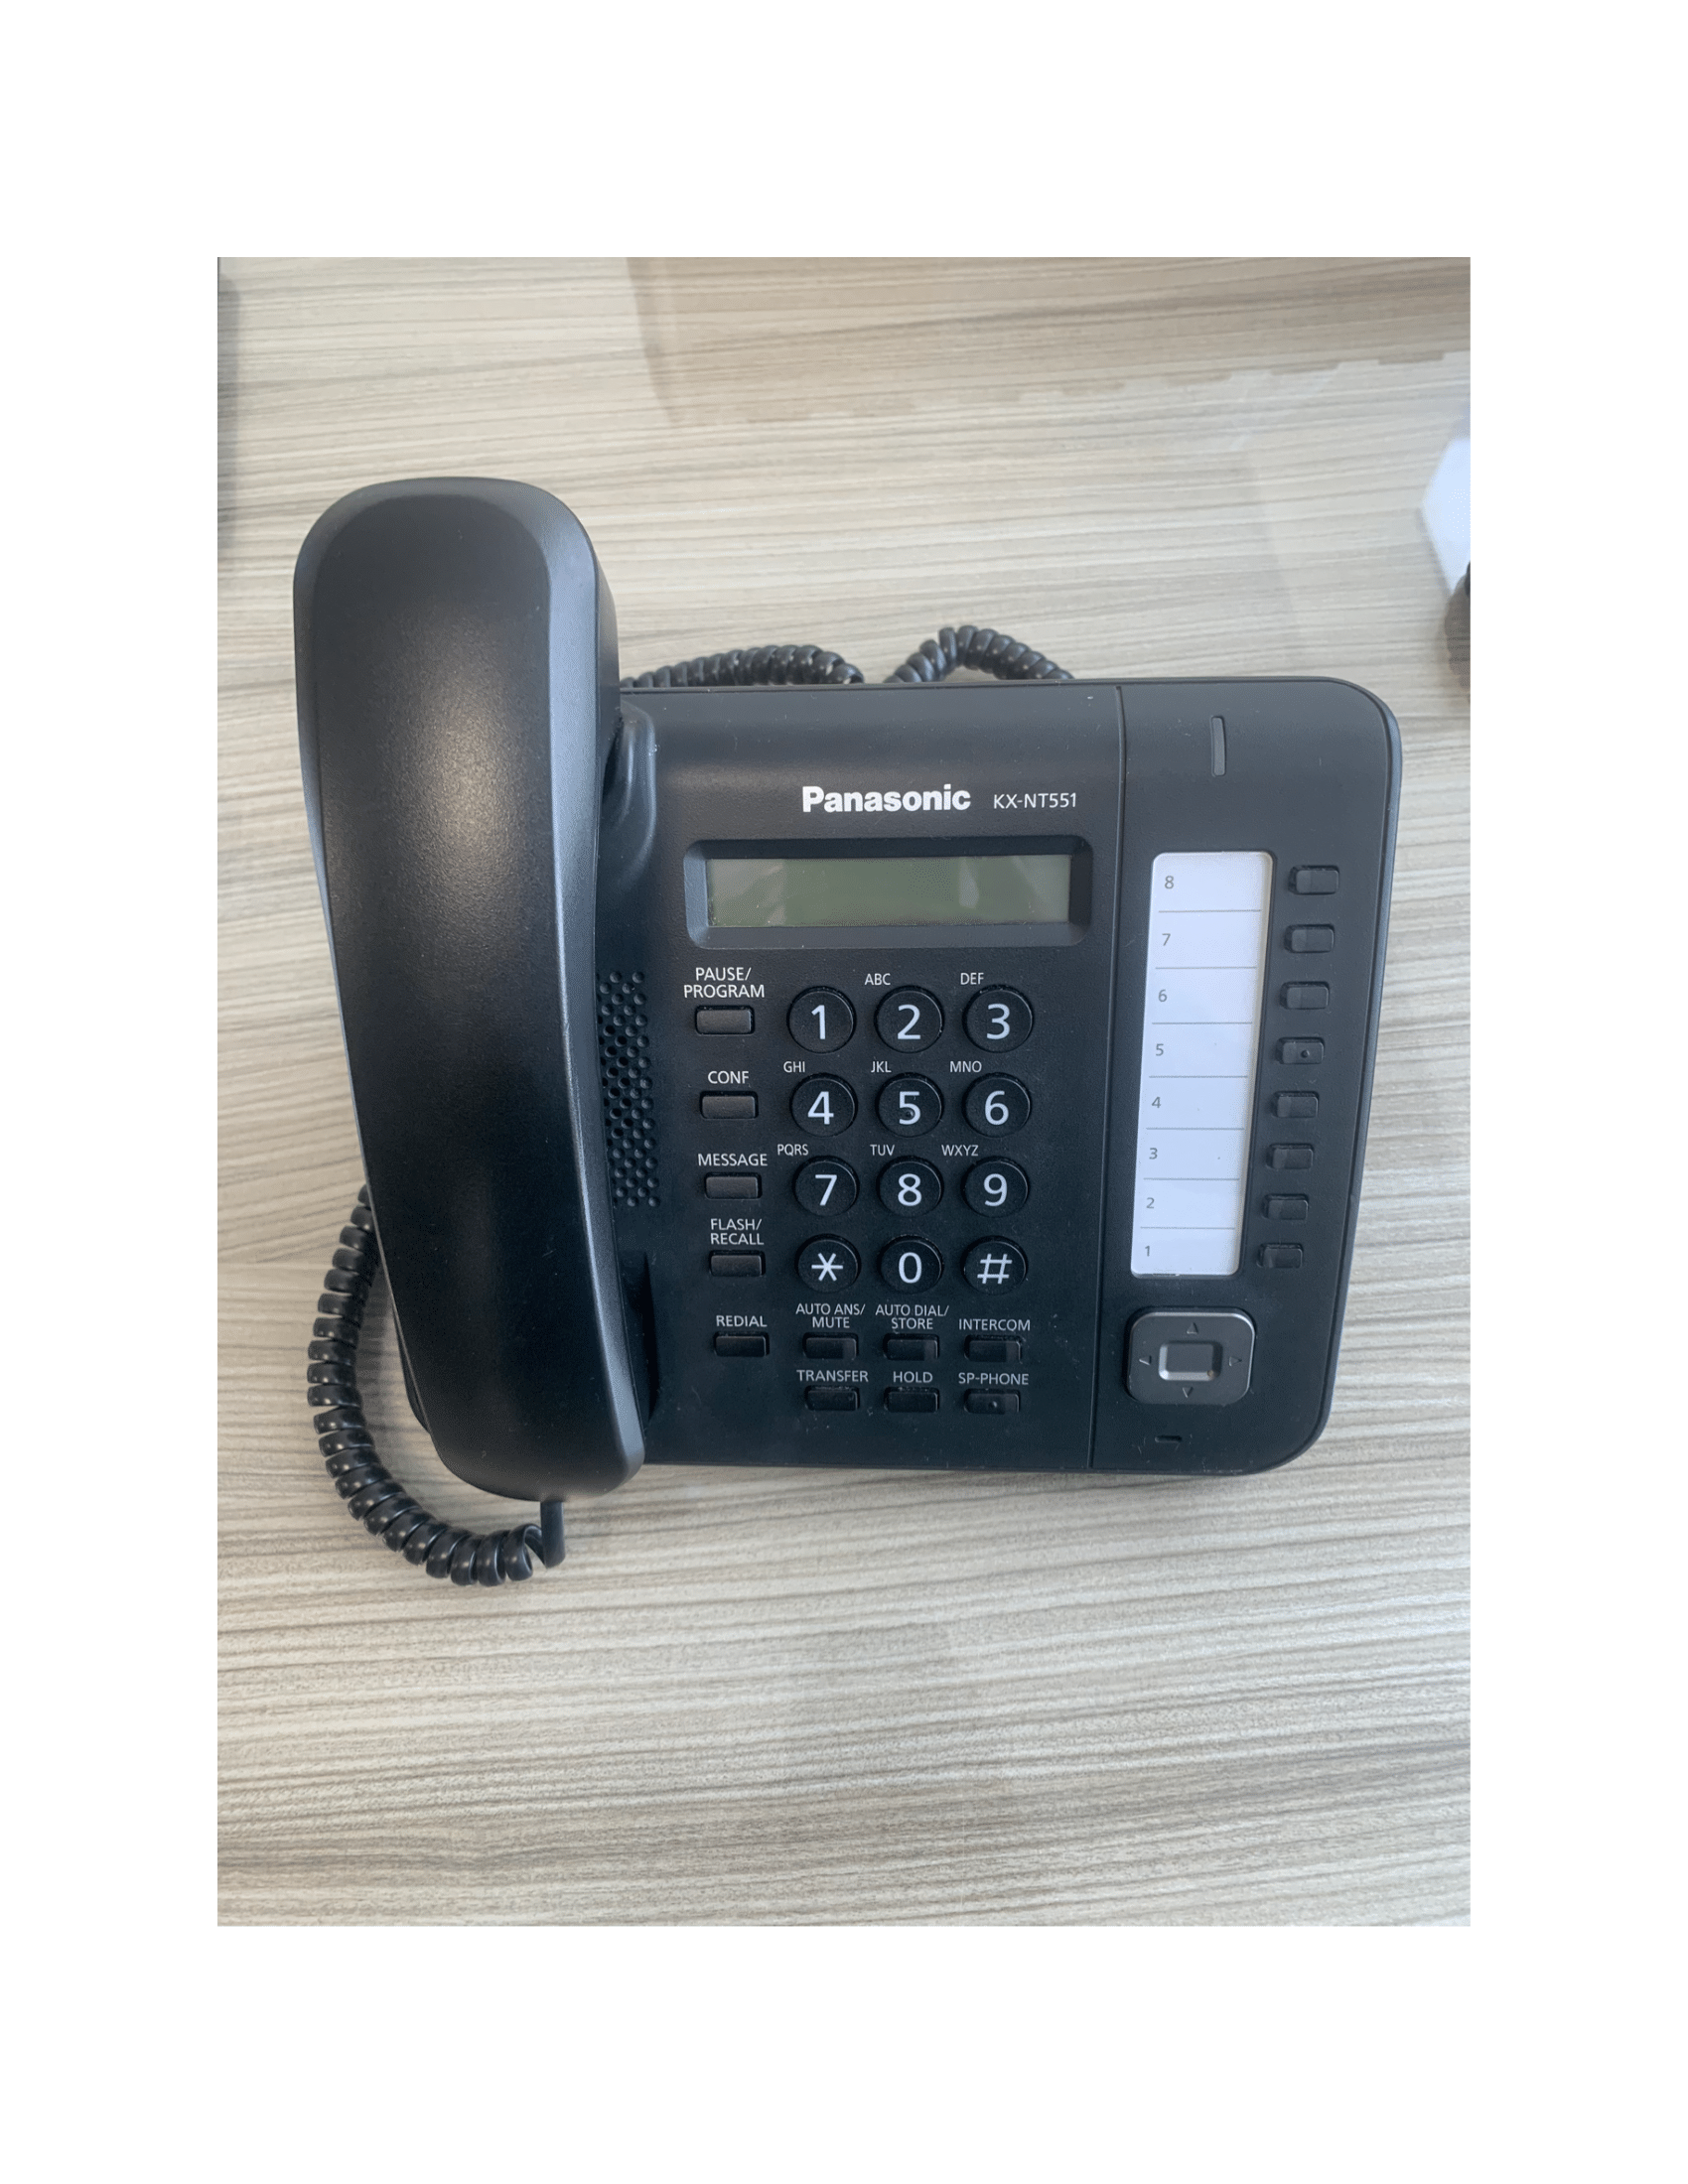 Panasonic KX-NT551 IP Phone